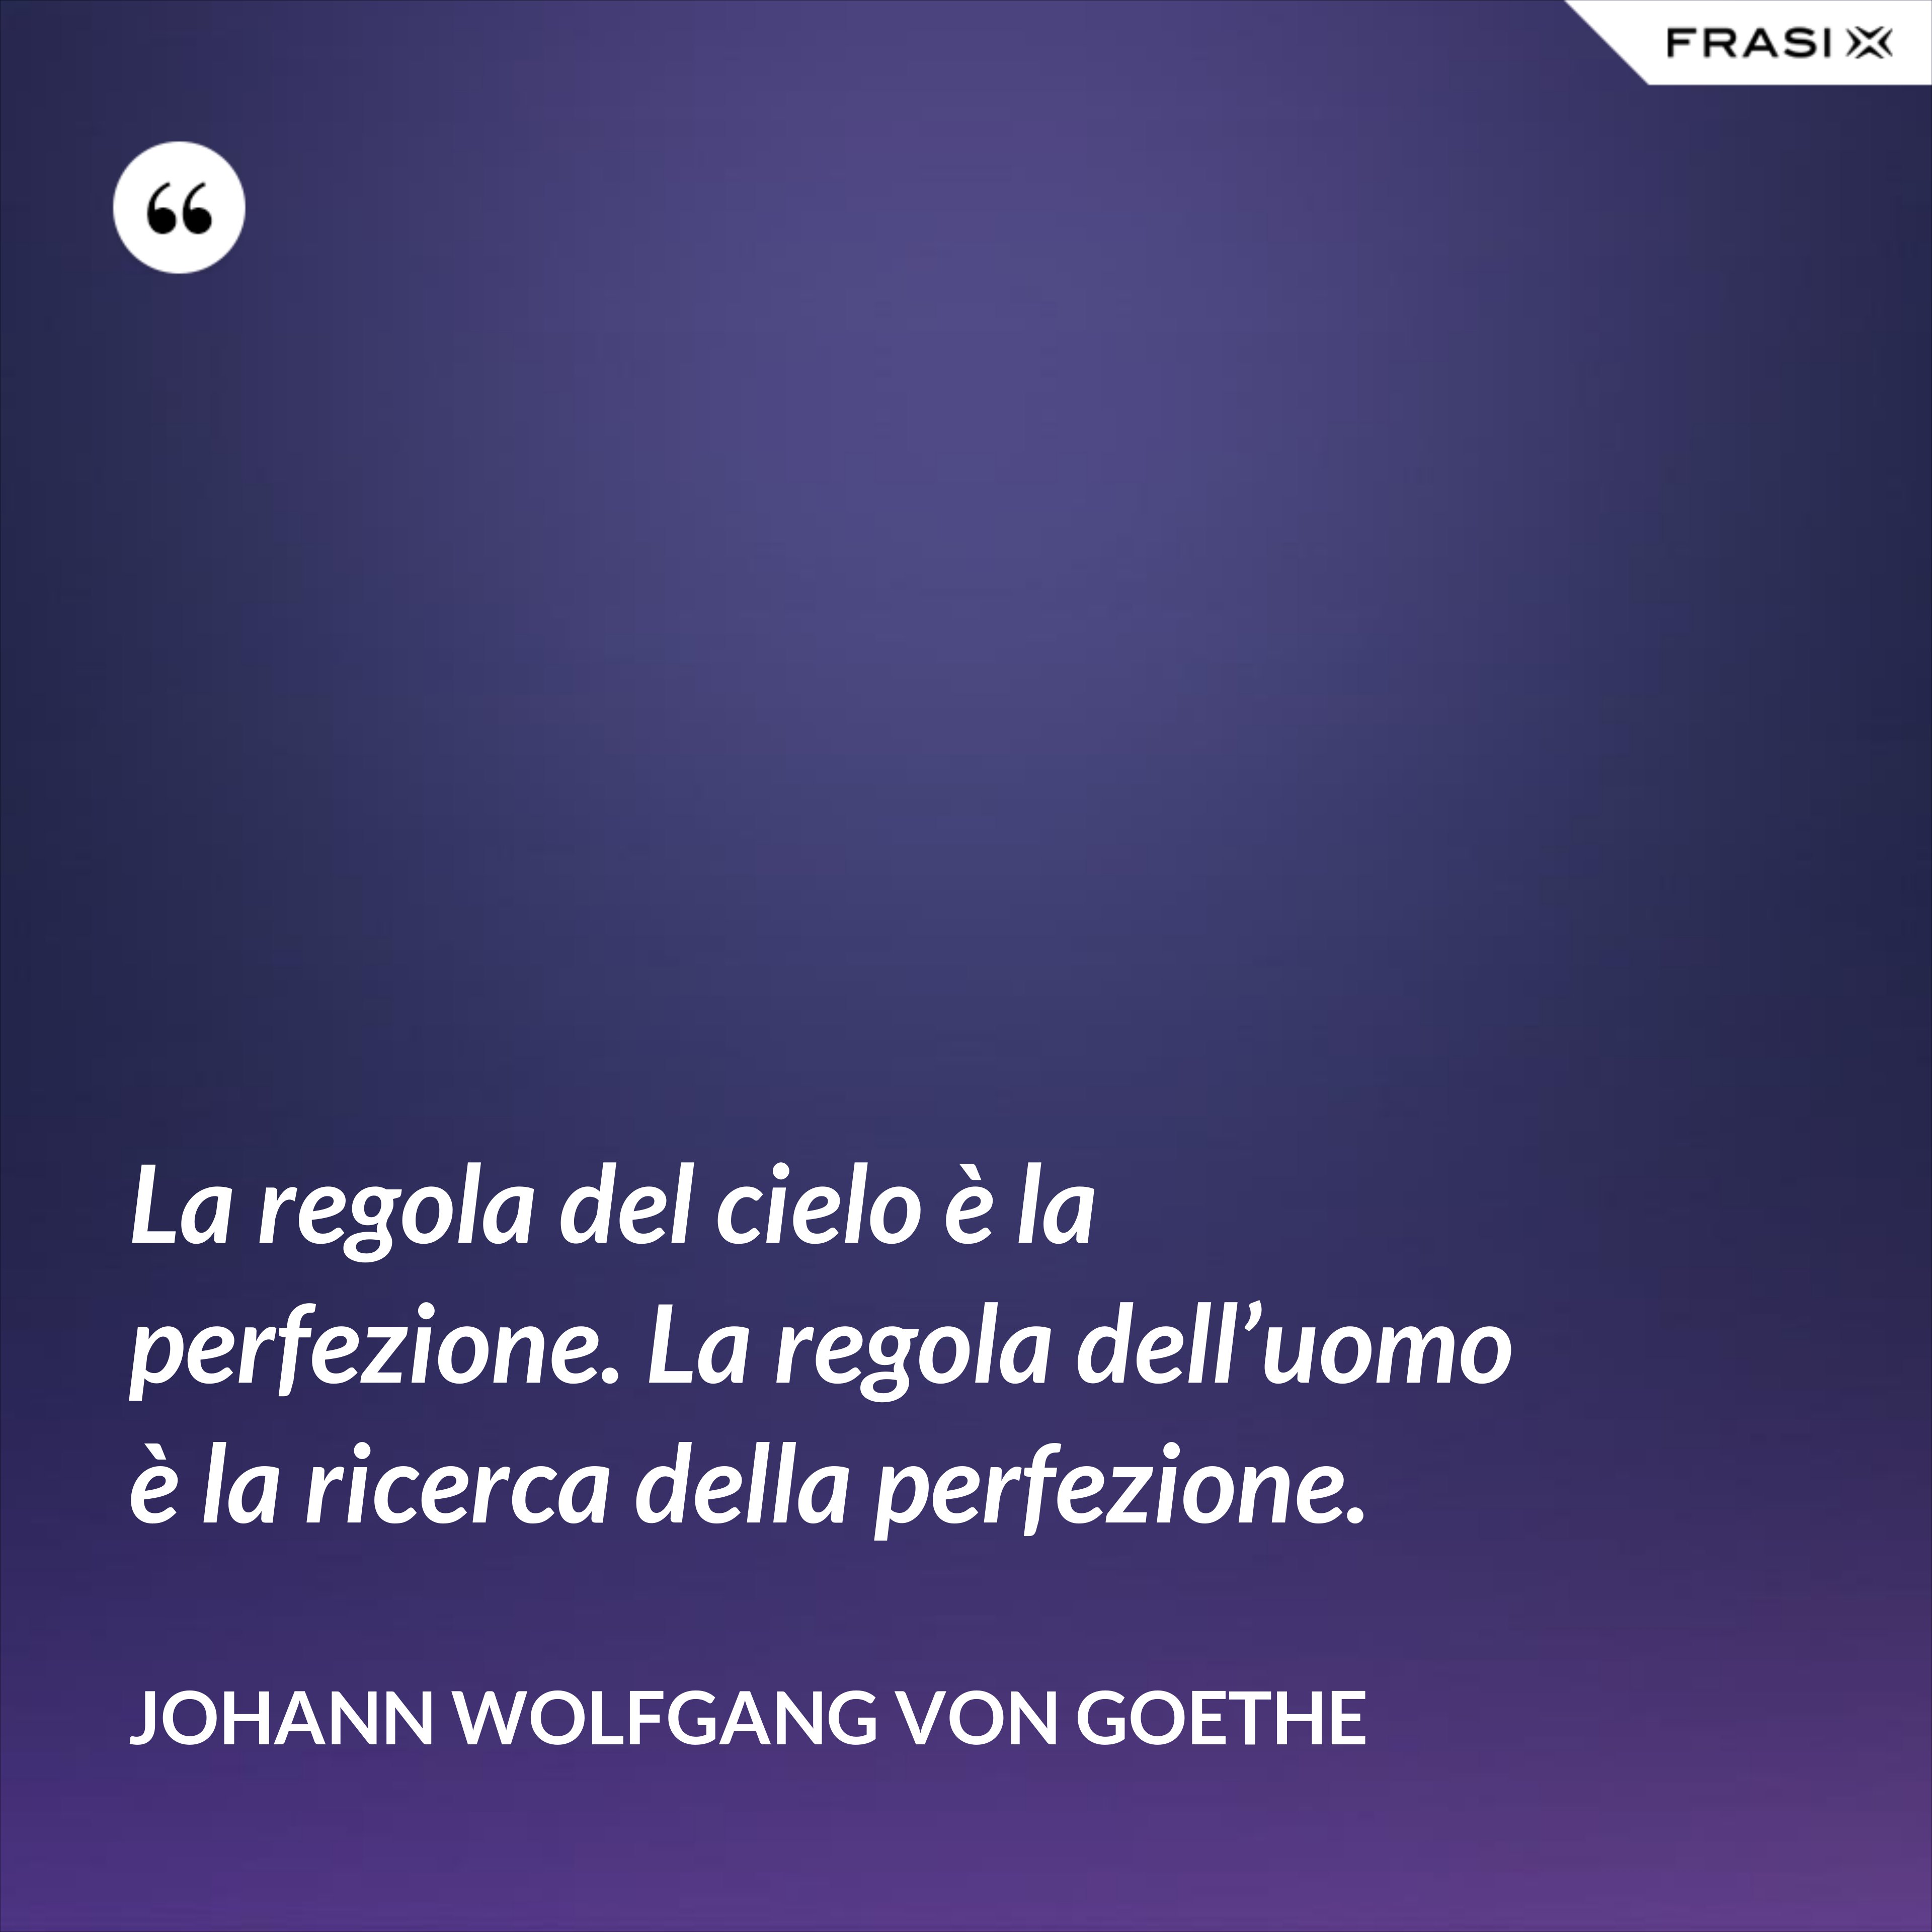 La regola del cielo è la perfezione. La regola dell’uomo è la ricerca della perfezione. - Johann Wolfgang von Goethe